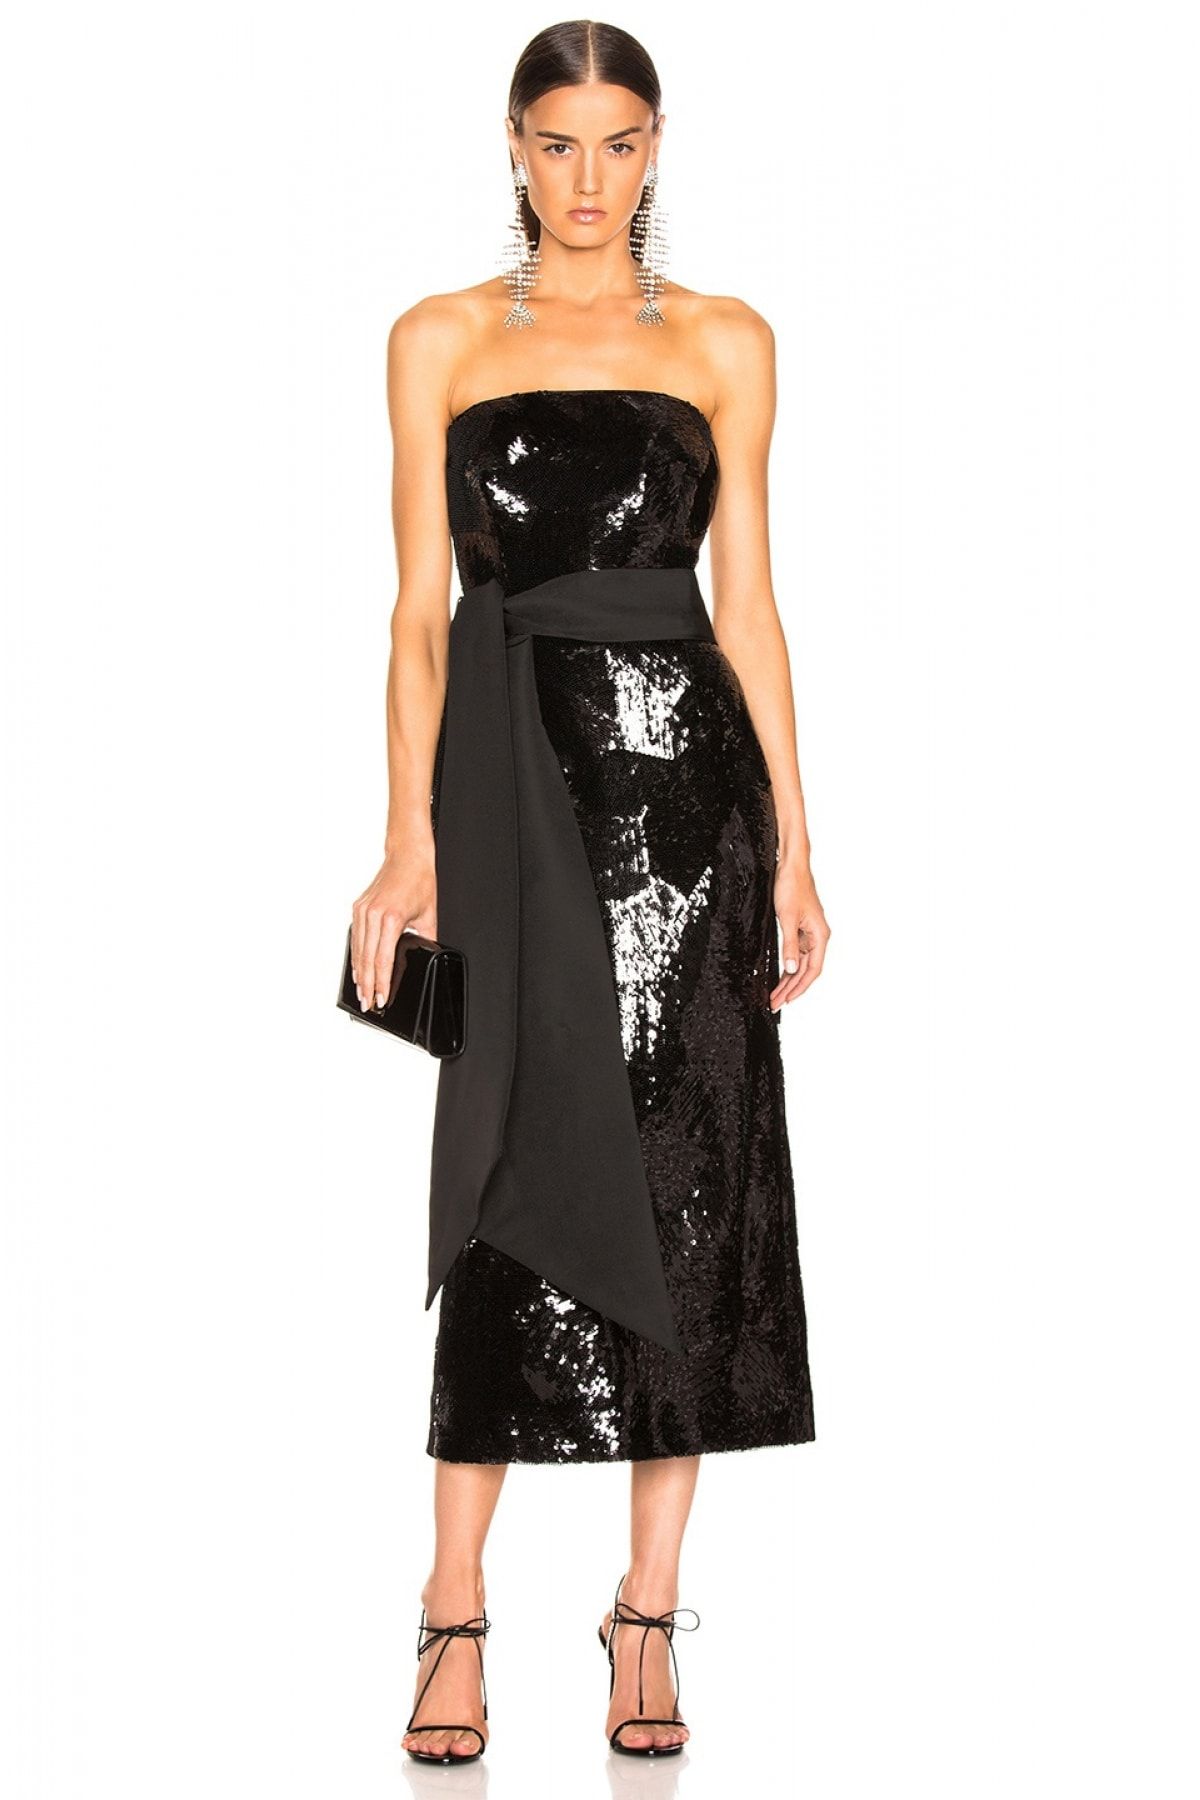 By Umut Design Kadın Geniş Kuşaklı Straplez Payet Elbise 4501628